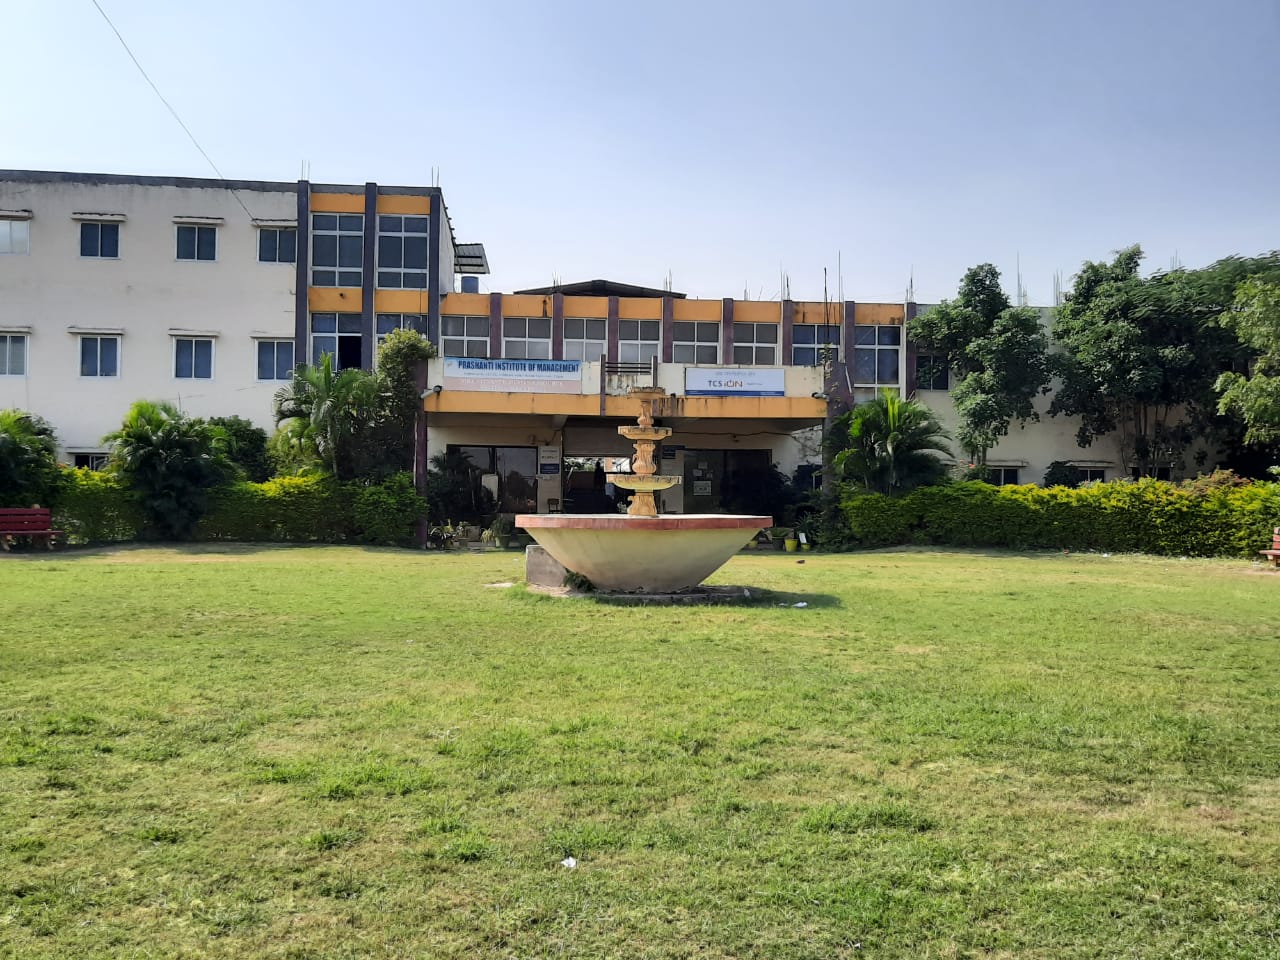 
Prashanti Institute of Management